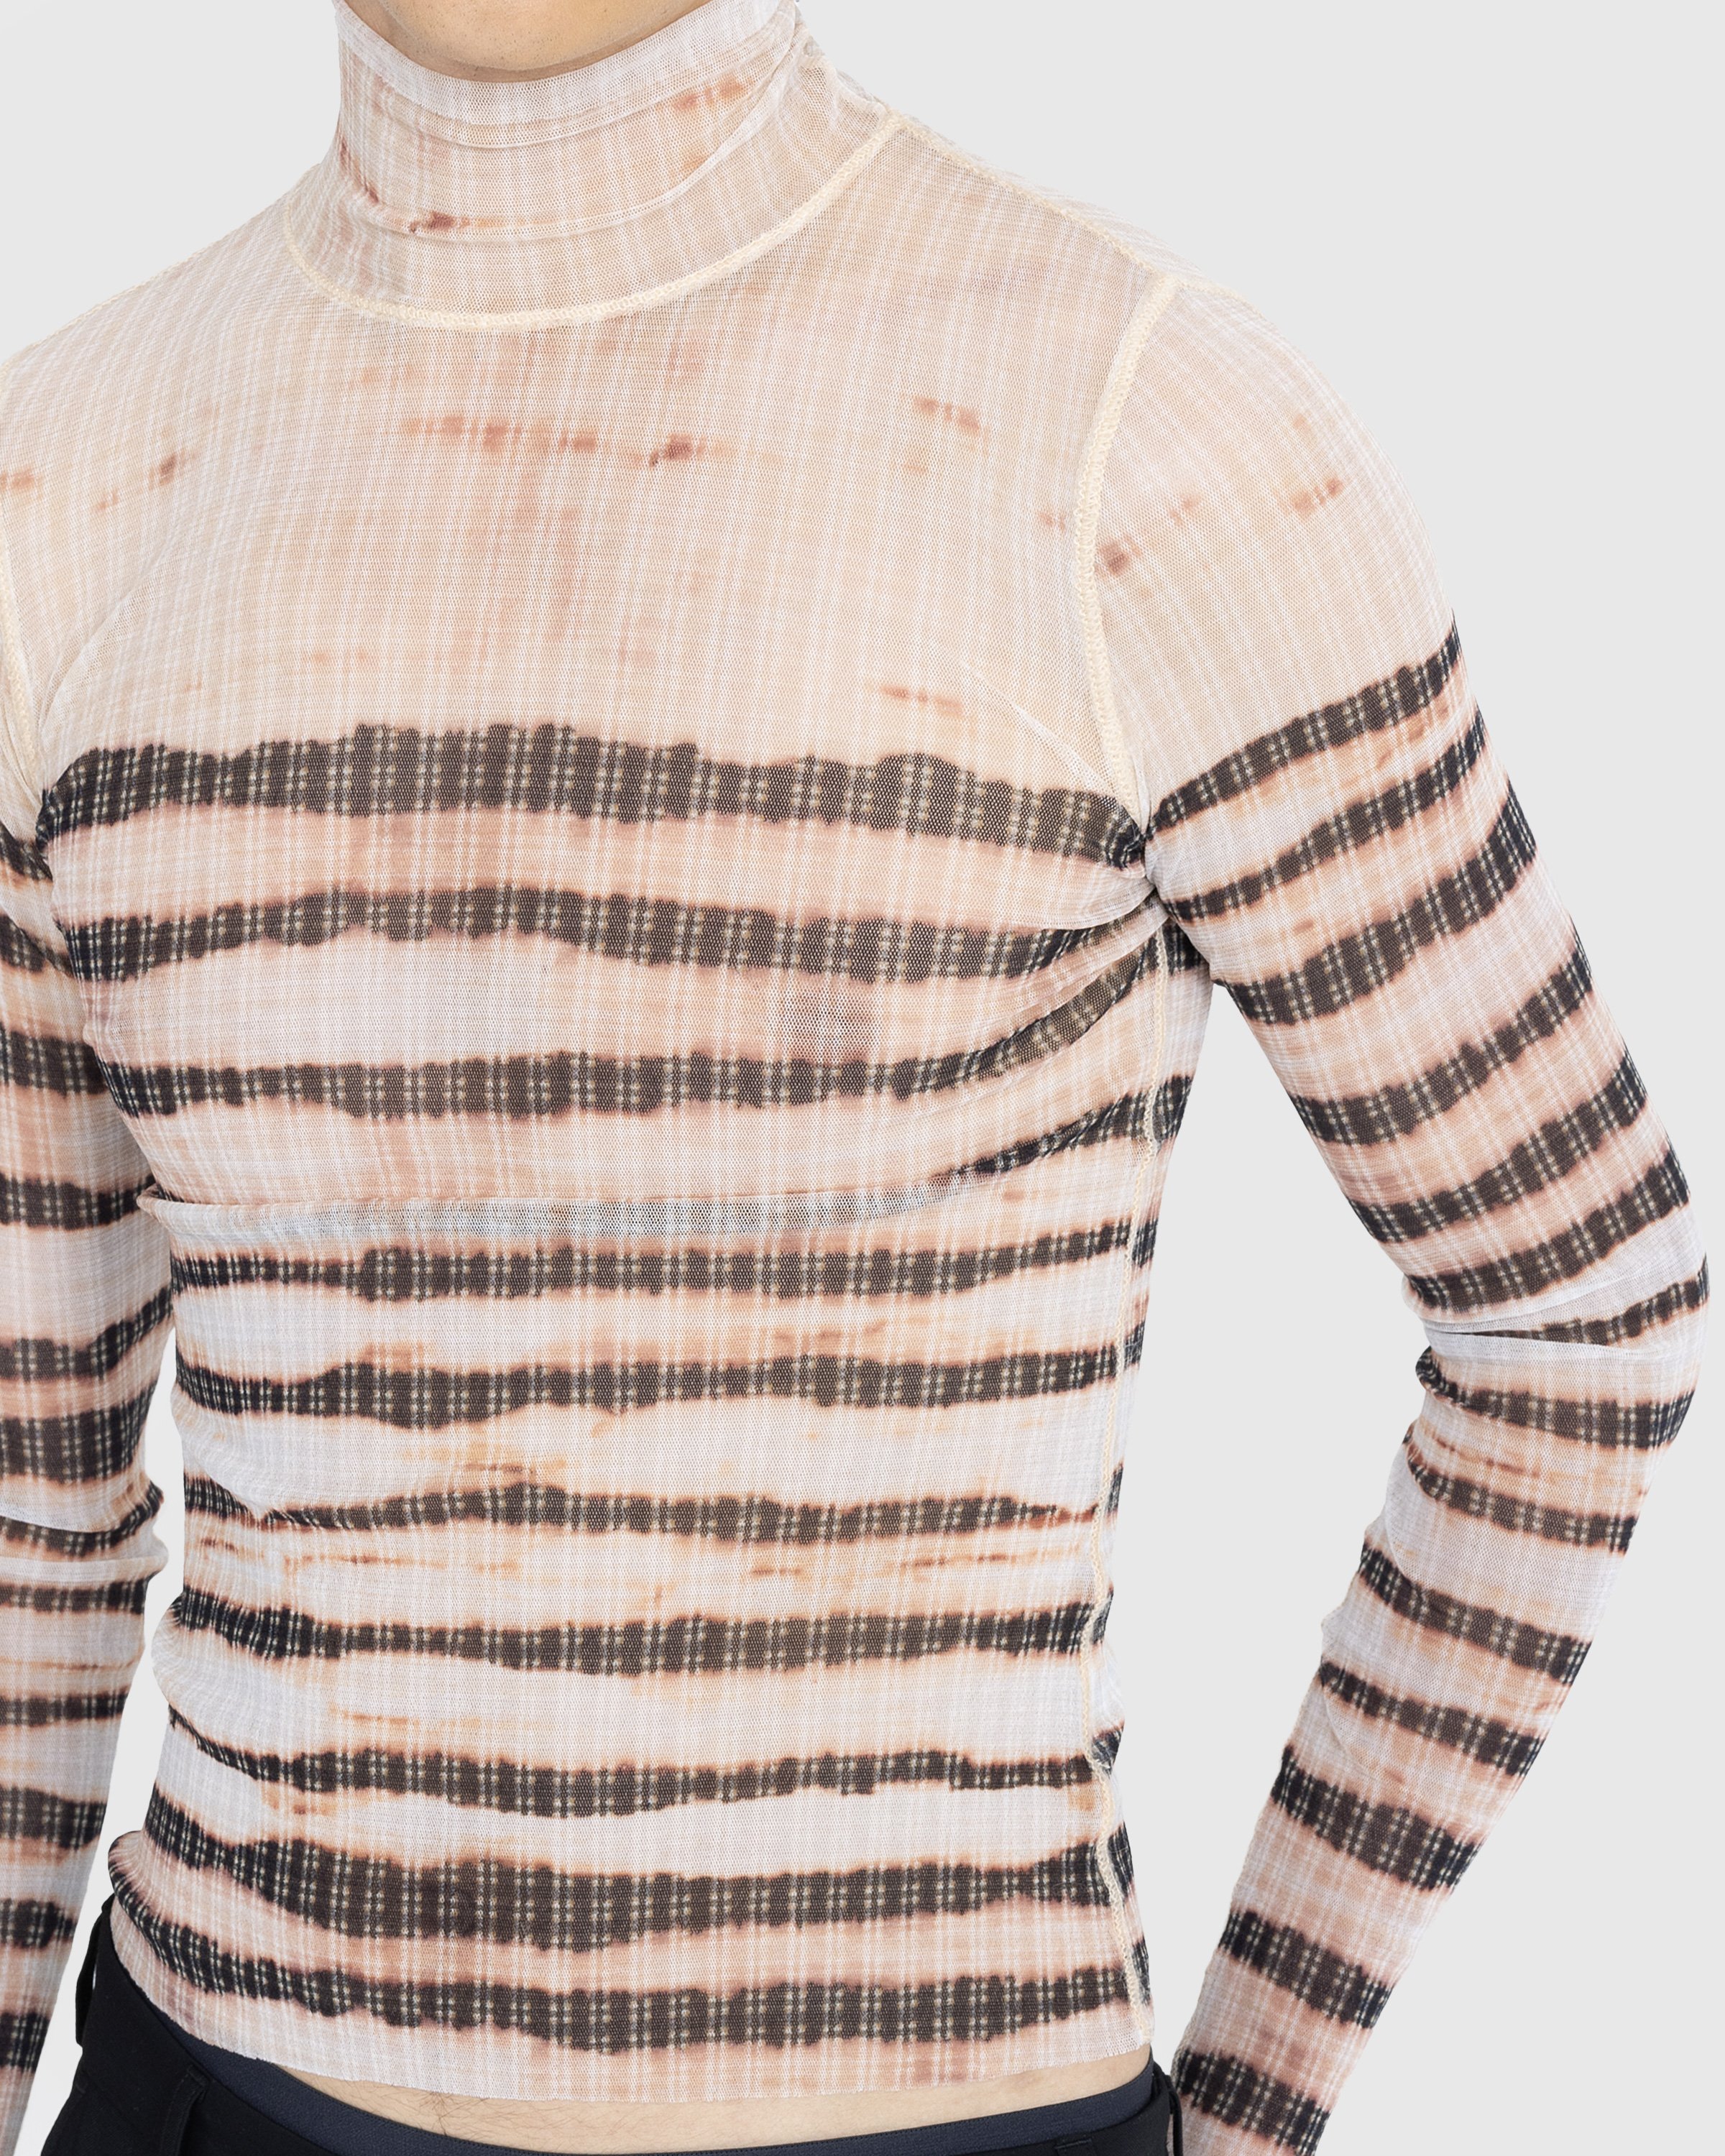 Jean Paul Gaultier - High Neck Longsleeve Printed Stripe Top Ecru/Brown - Clothing - Beige - Image 4